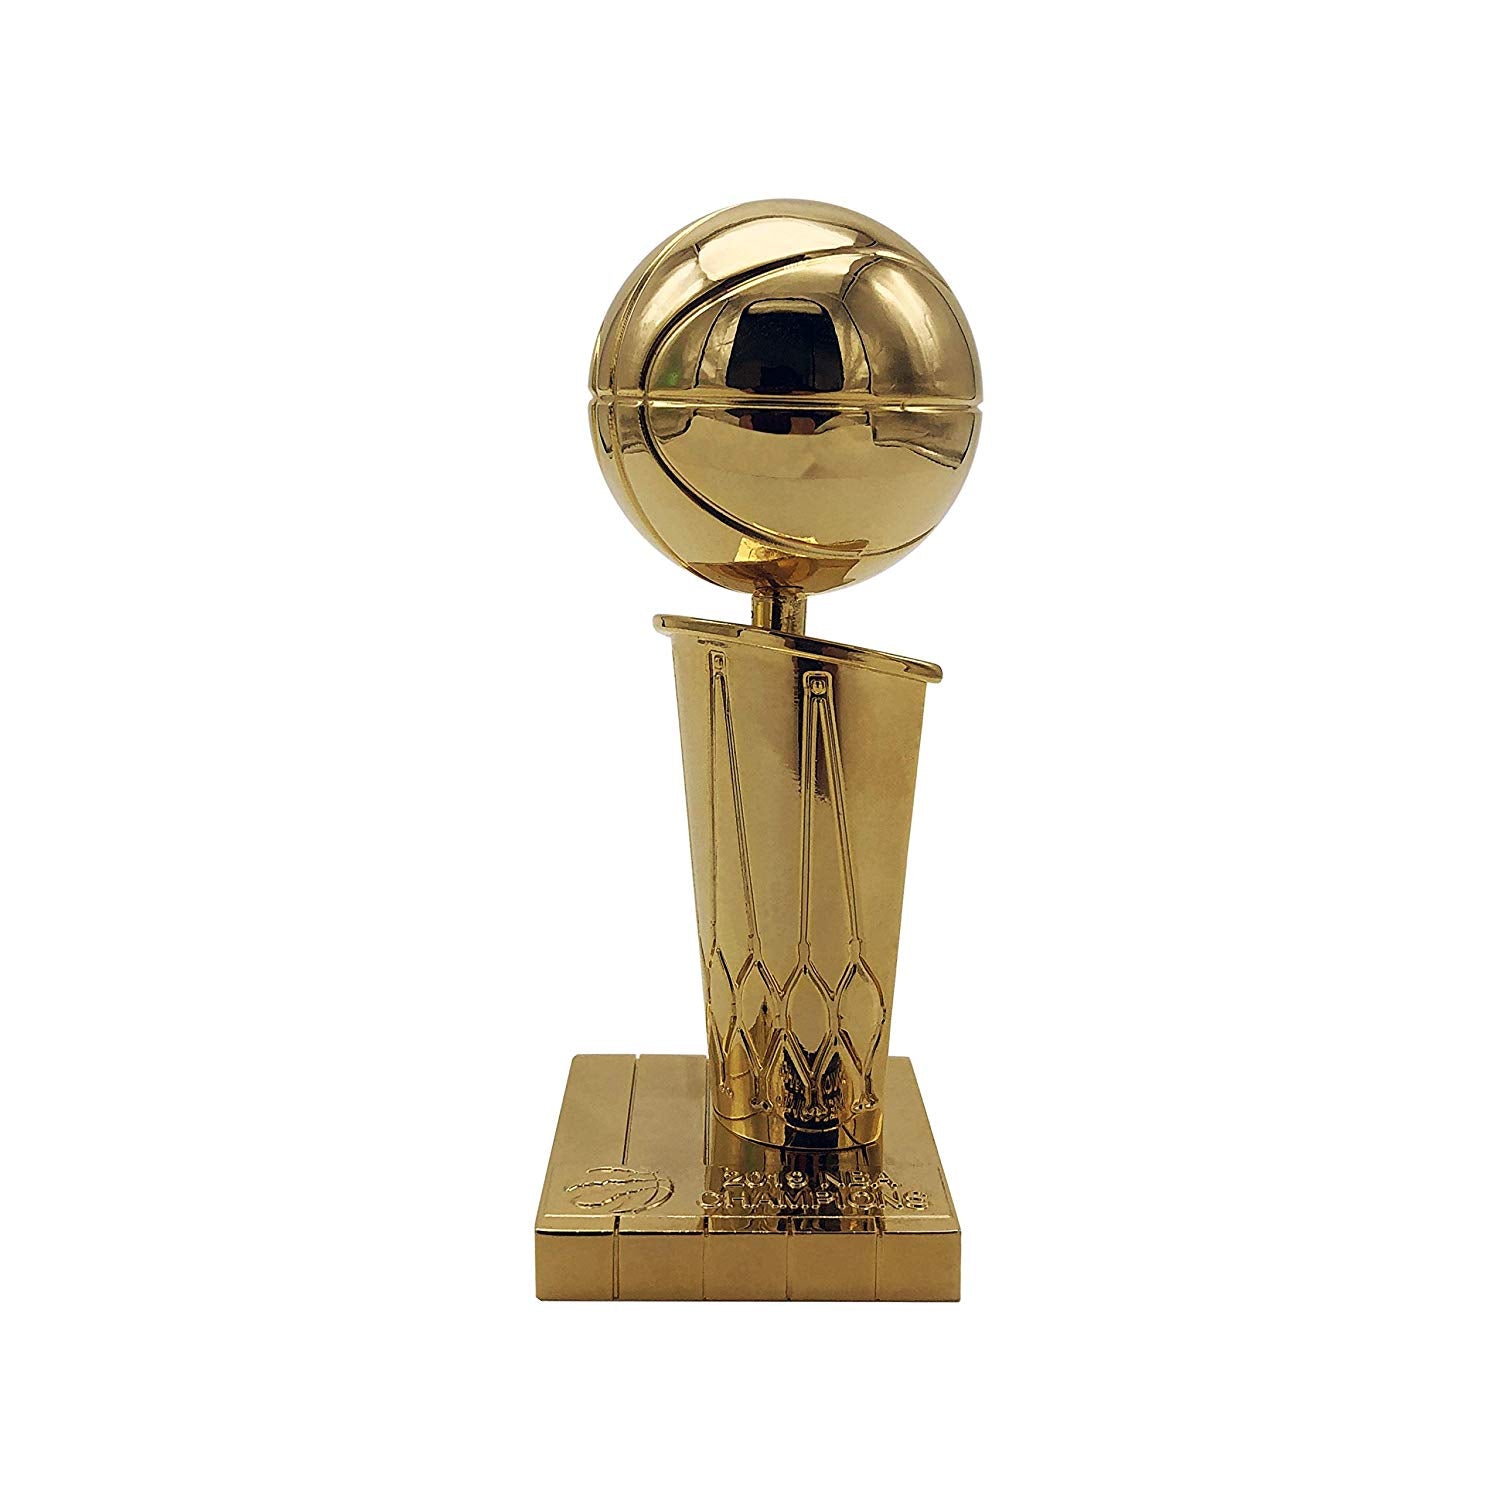 A closer look at the Raptors' Larry O'Brien Championship Trophy